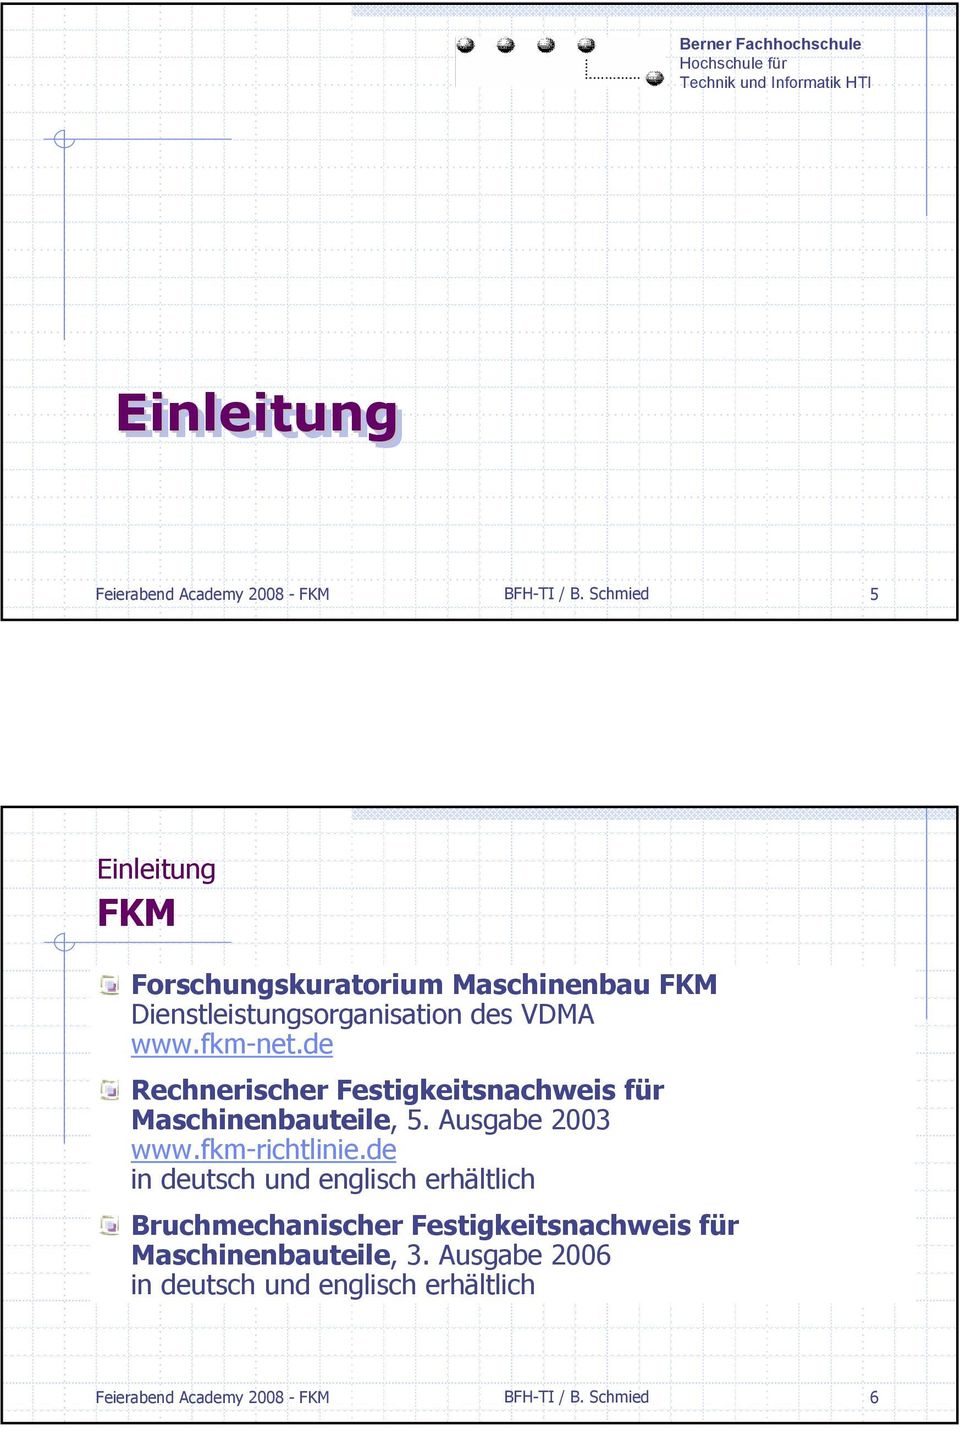 de Rechnerischer Festigkeitsnachweis für Maschinenbauteile, 5. Ausgabe 2003 www.fkm-richtlinie.